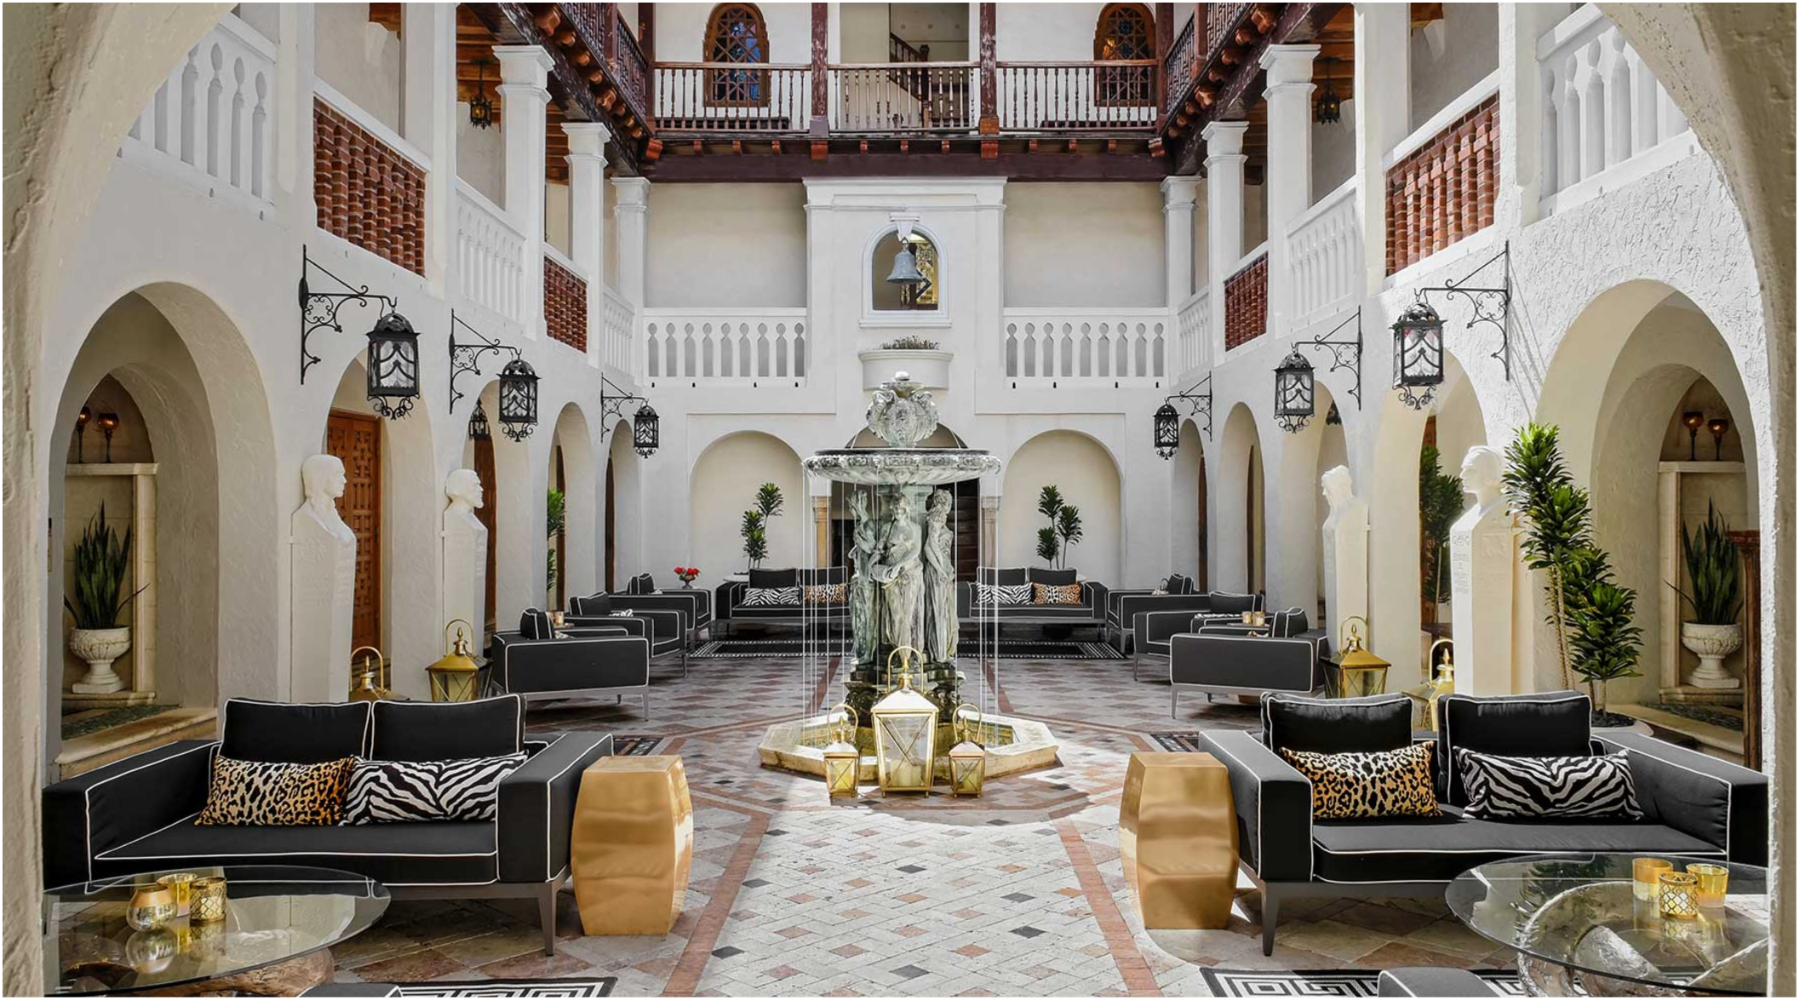 Da li ste znali da možete prenoćiti u vili u kojoj je živeo Gianni Versace?